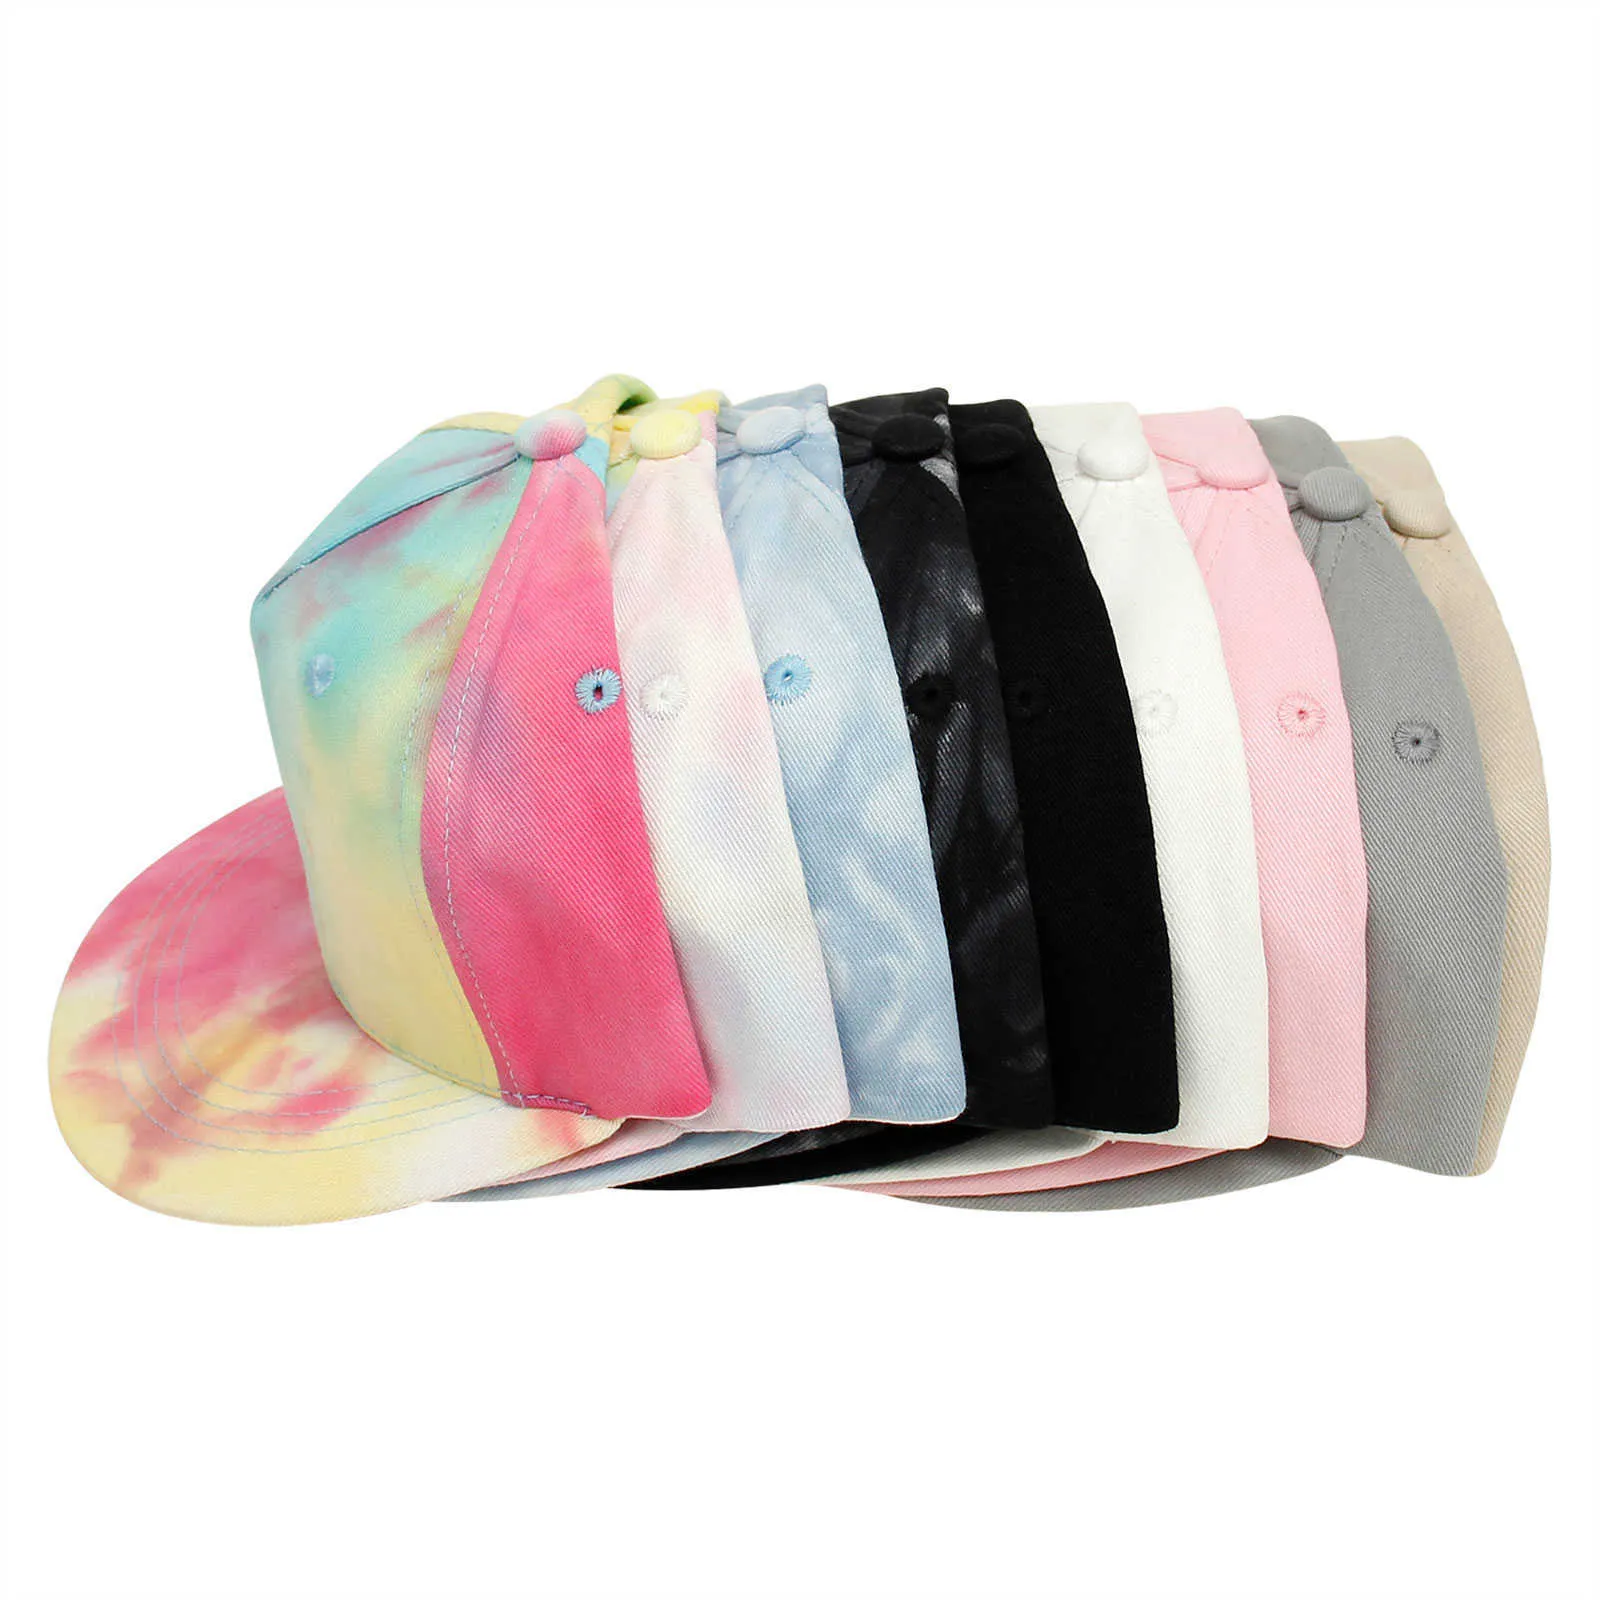 Czapki czapki moda dzieci hip-hopowe czapki dla dzieci chłopcy dziewczyny solidny kolor/krawat baseball czapki maluch na zewnątrz płaskie grzbiet